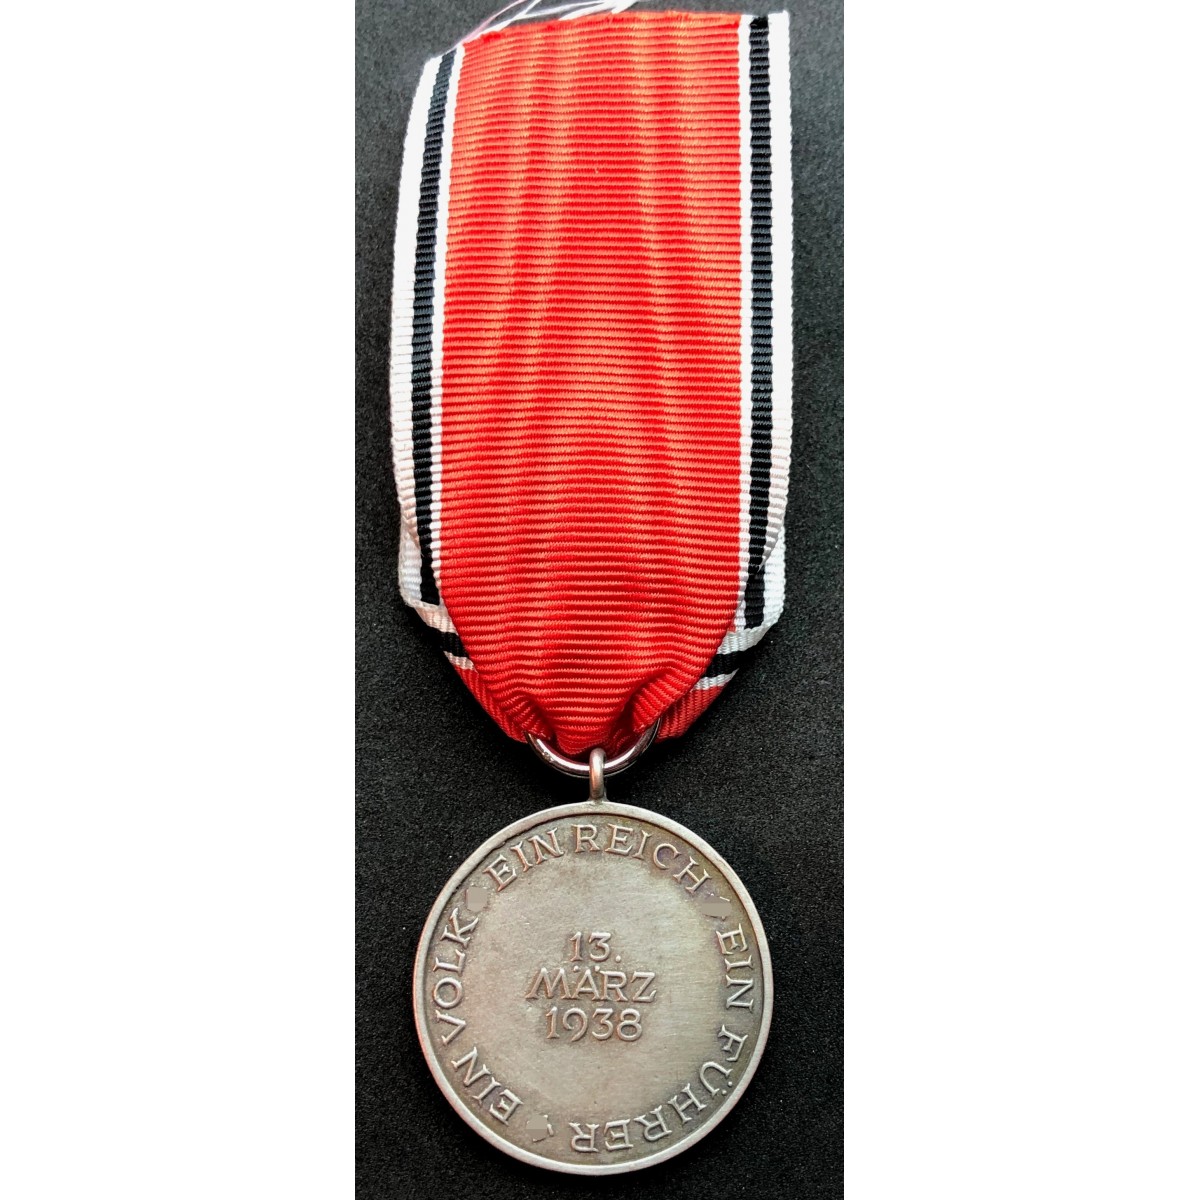 Ordensband März Medaille 30mm 0,5meter D699 m9,80 